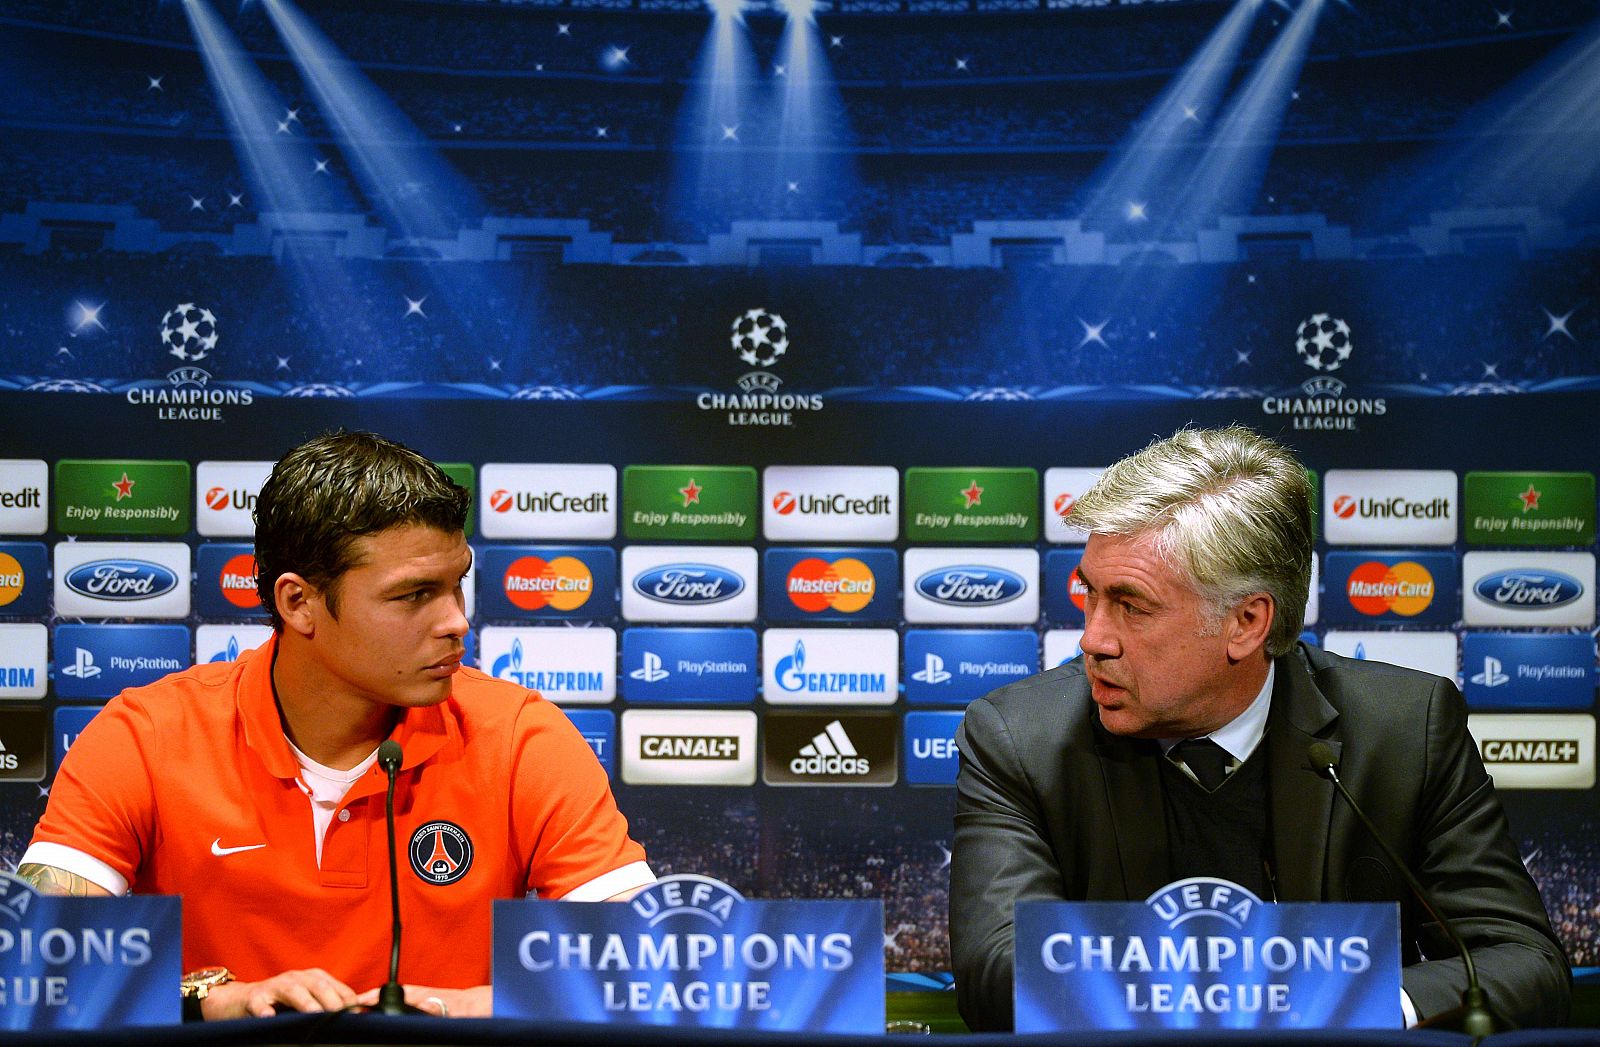 El entrenador del PSG, Carlo Ancelotti, junto al jugador brasileño Thiago Silva en rueda de prensa